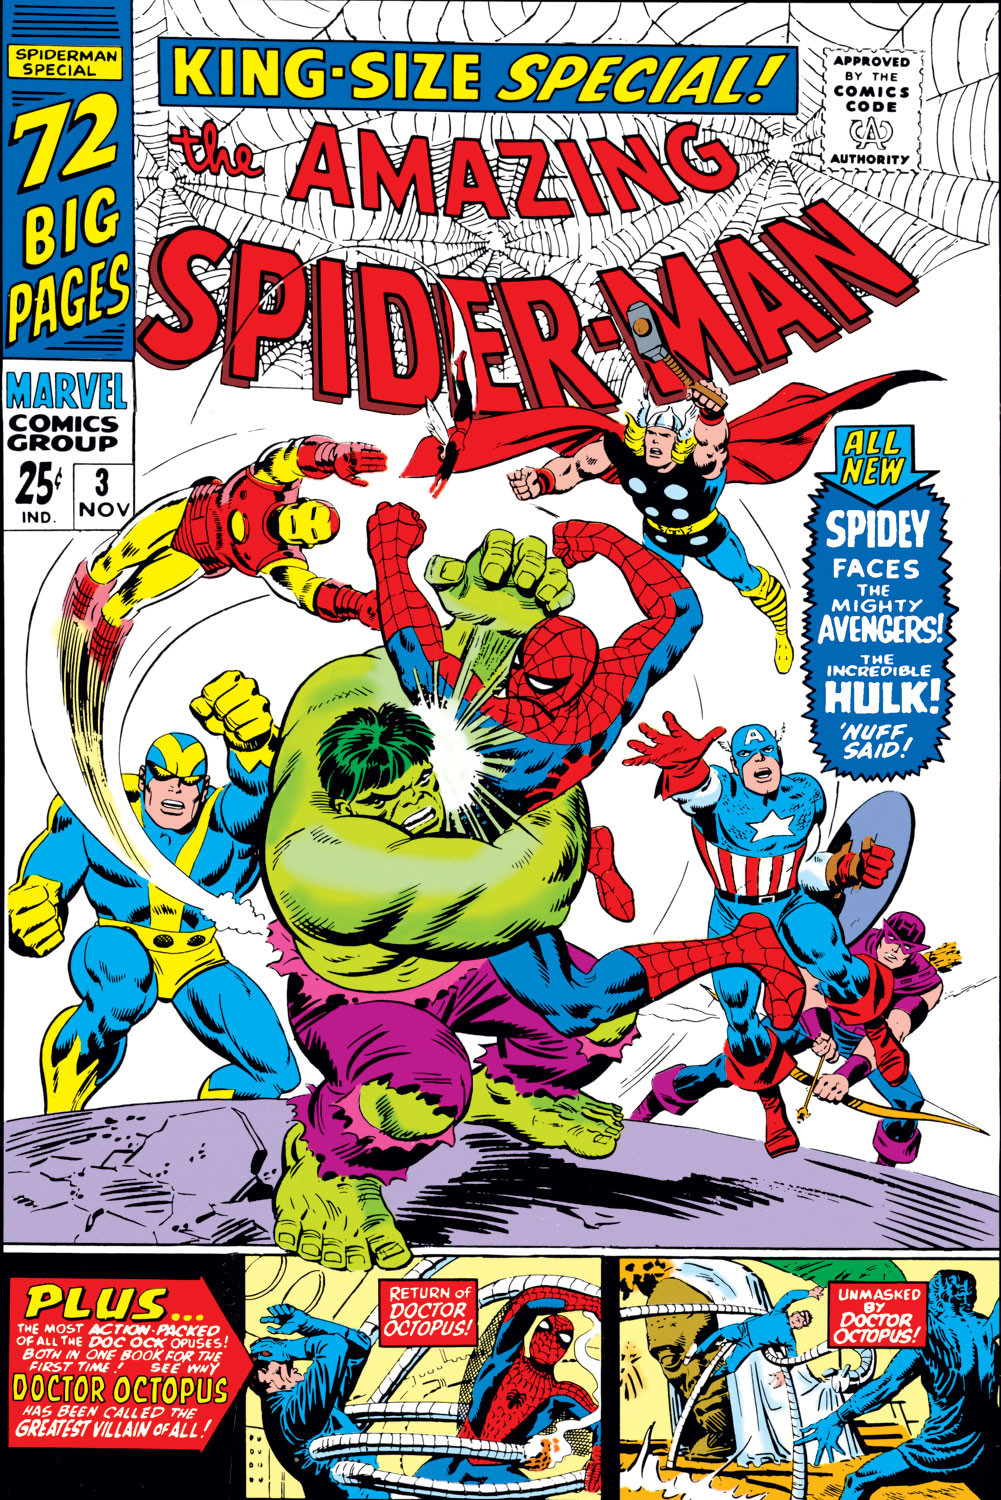 Amazing Spider `17 Various Man Annual #1 NM 